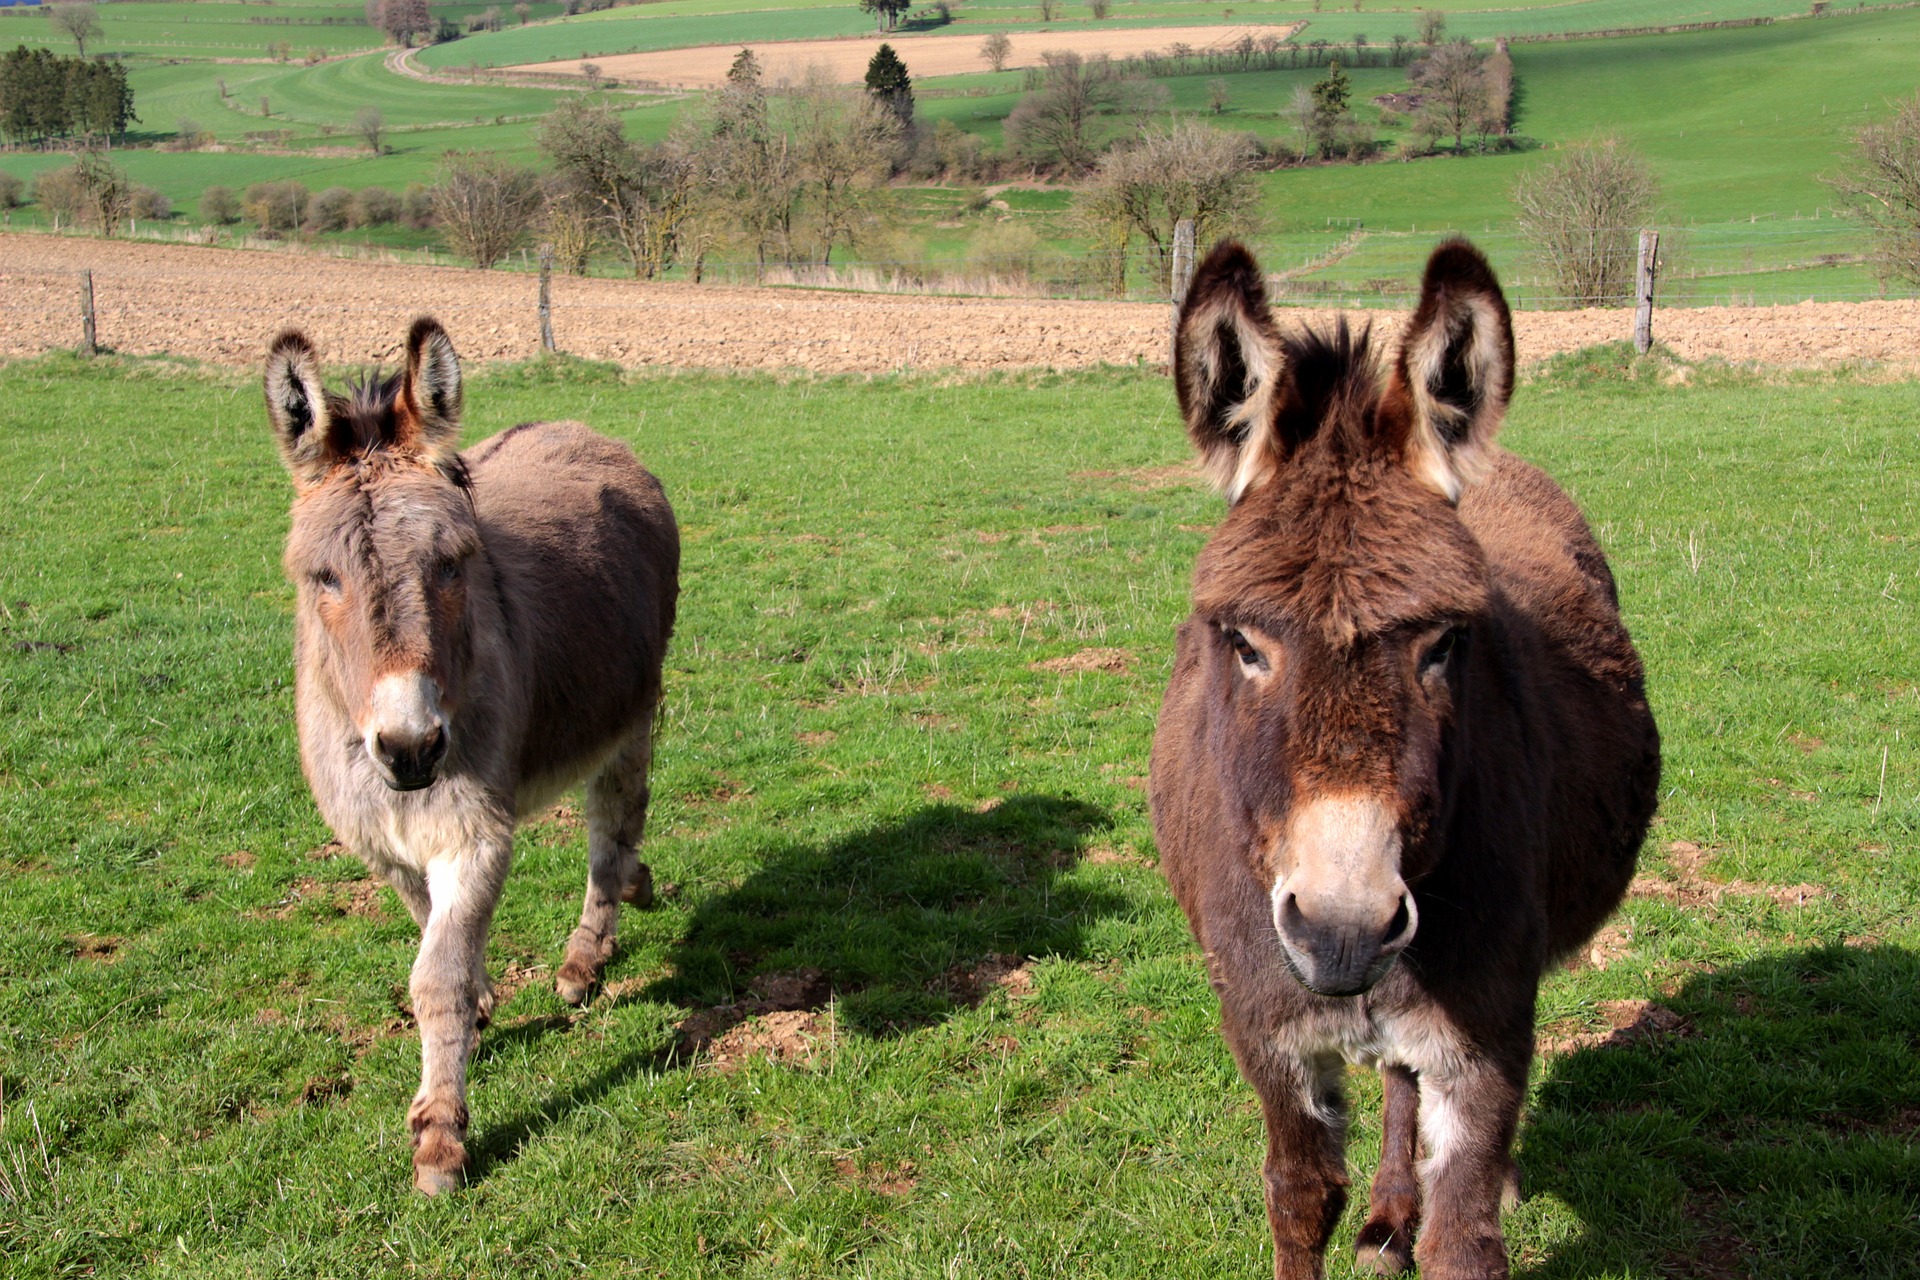 Donkeys in the farm photo